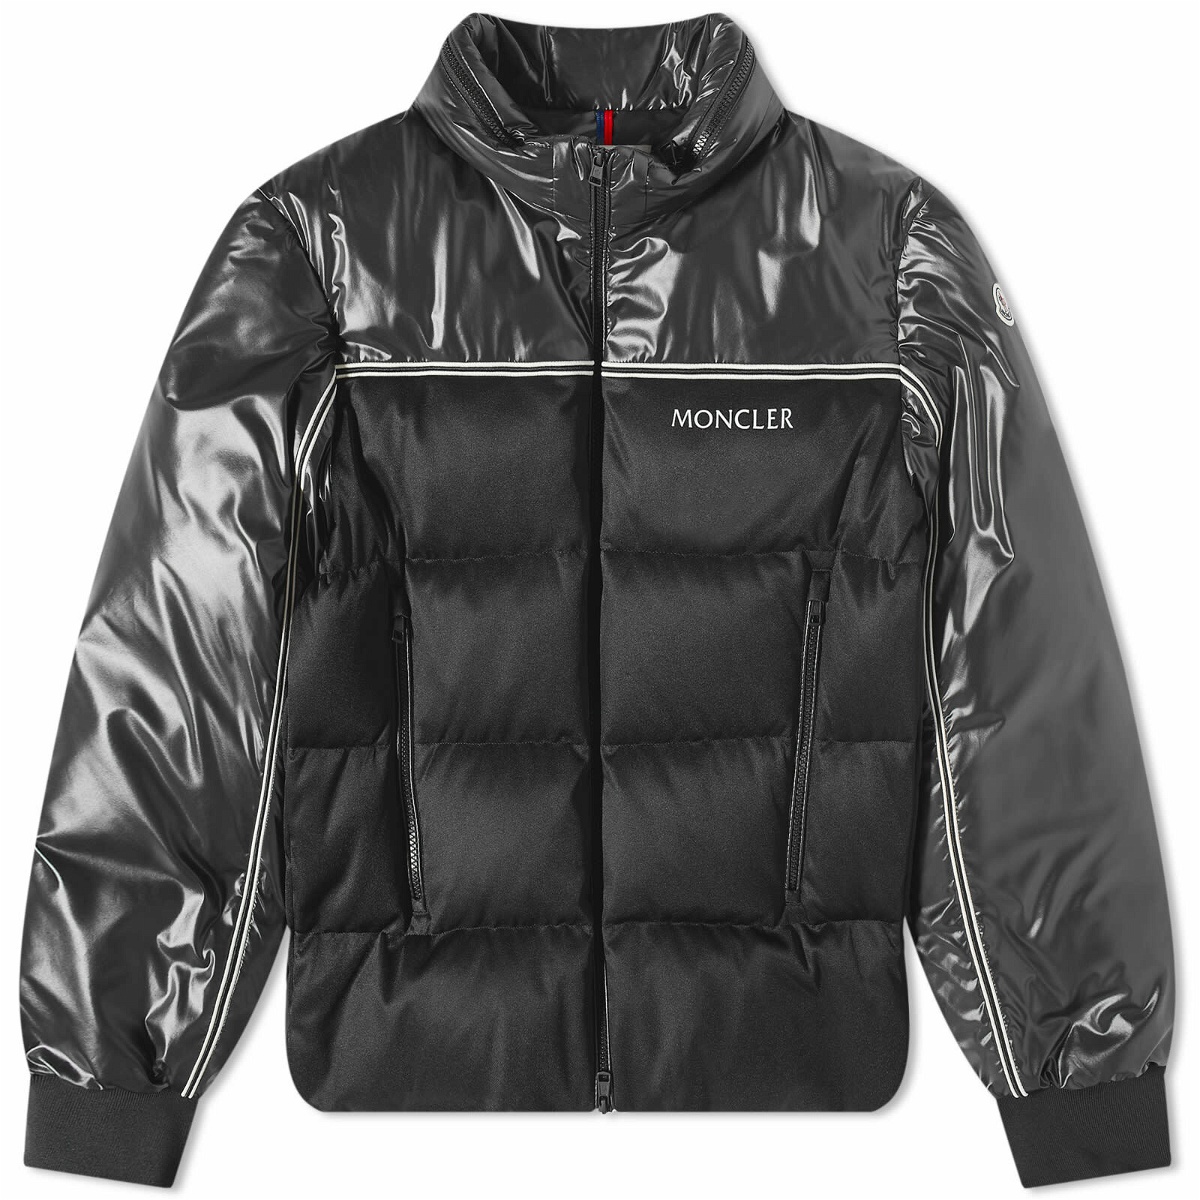 Moncler Men's Michael Padded Jacket in Black Moncler